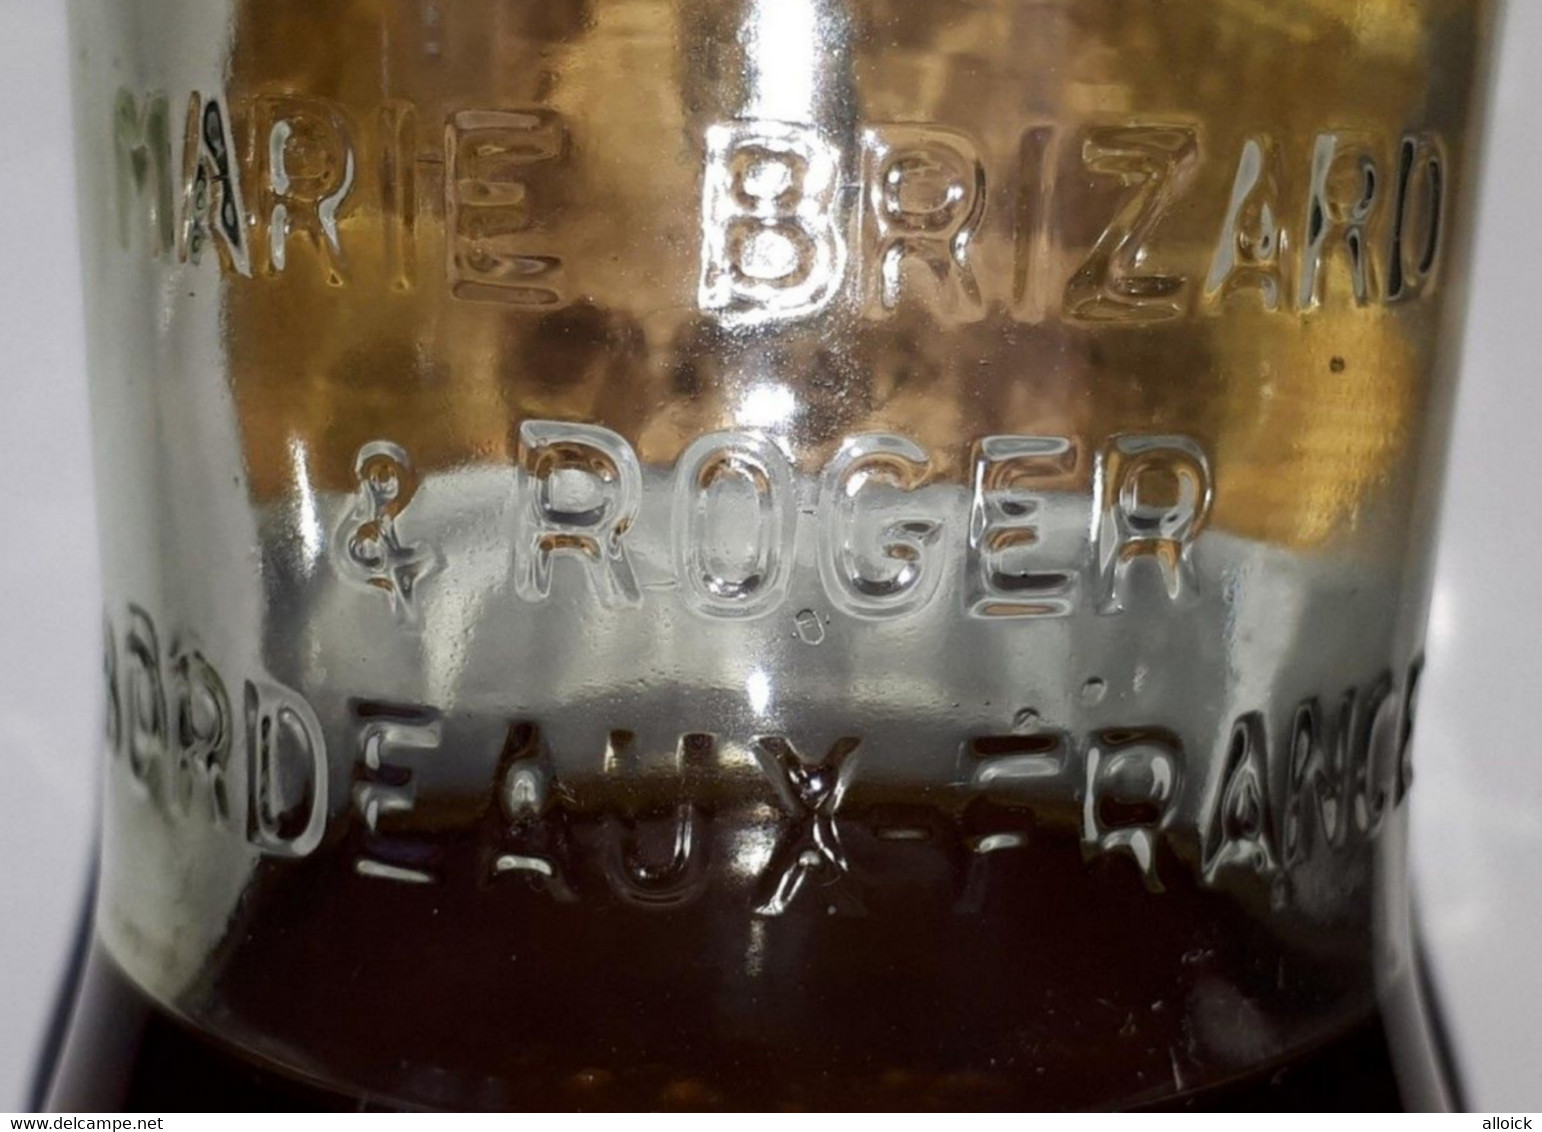 Très Rare bouteille d'Anisette Marie Brizard de 1955 - Bicentenaire 1755-1955 - Voir l'annonce et les scans.